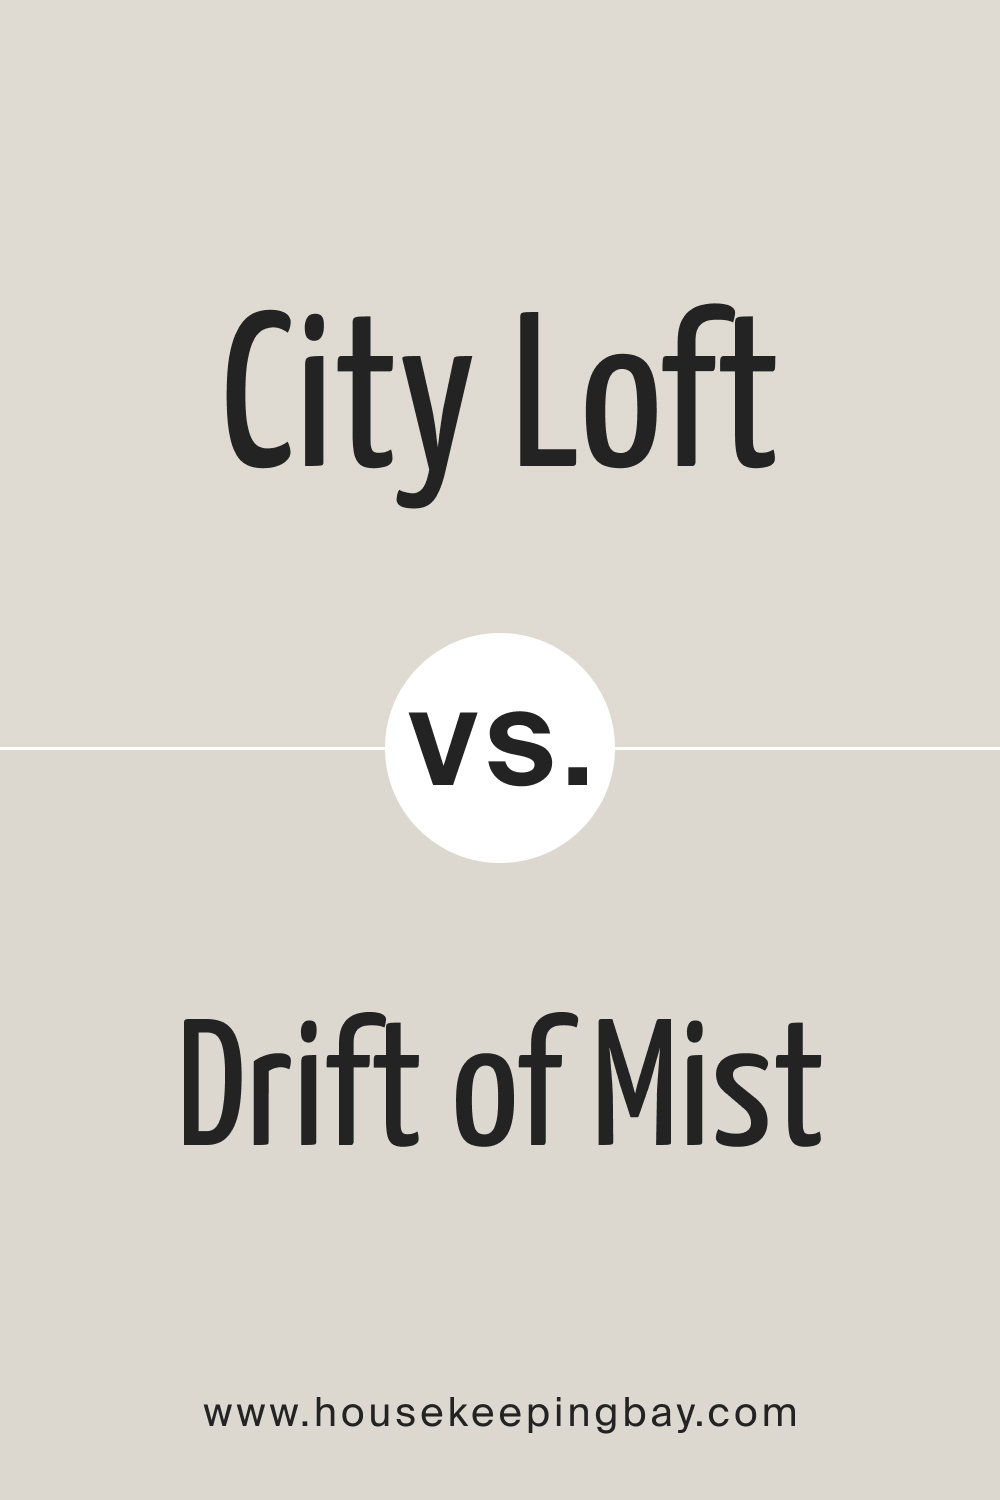 City Loft vs Drift of Mist